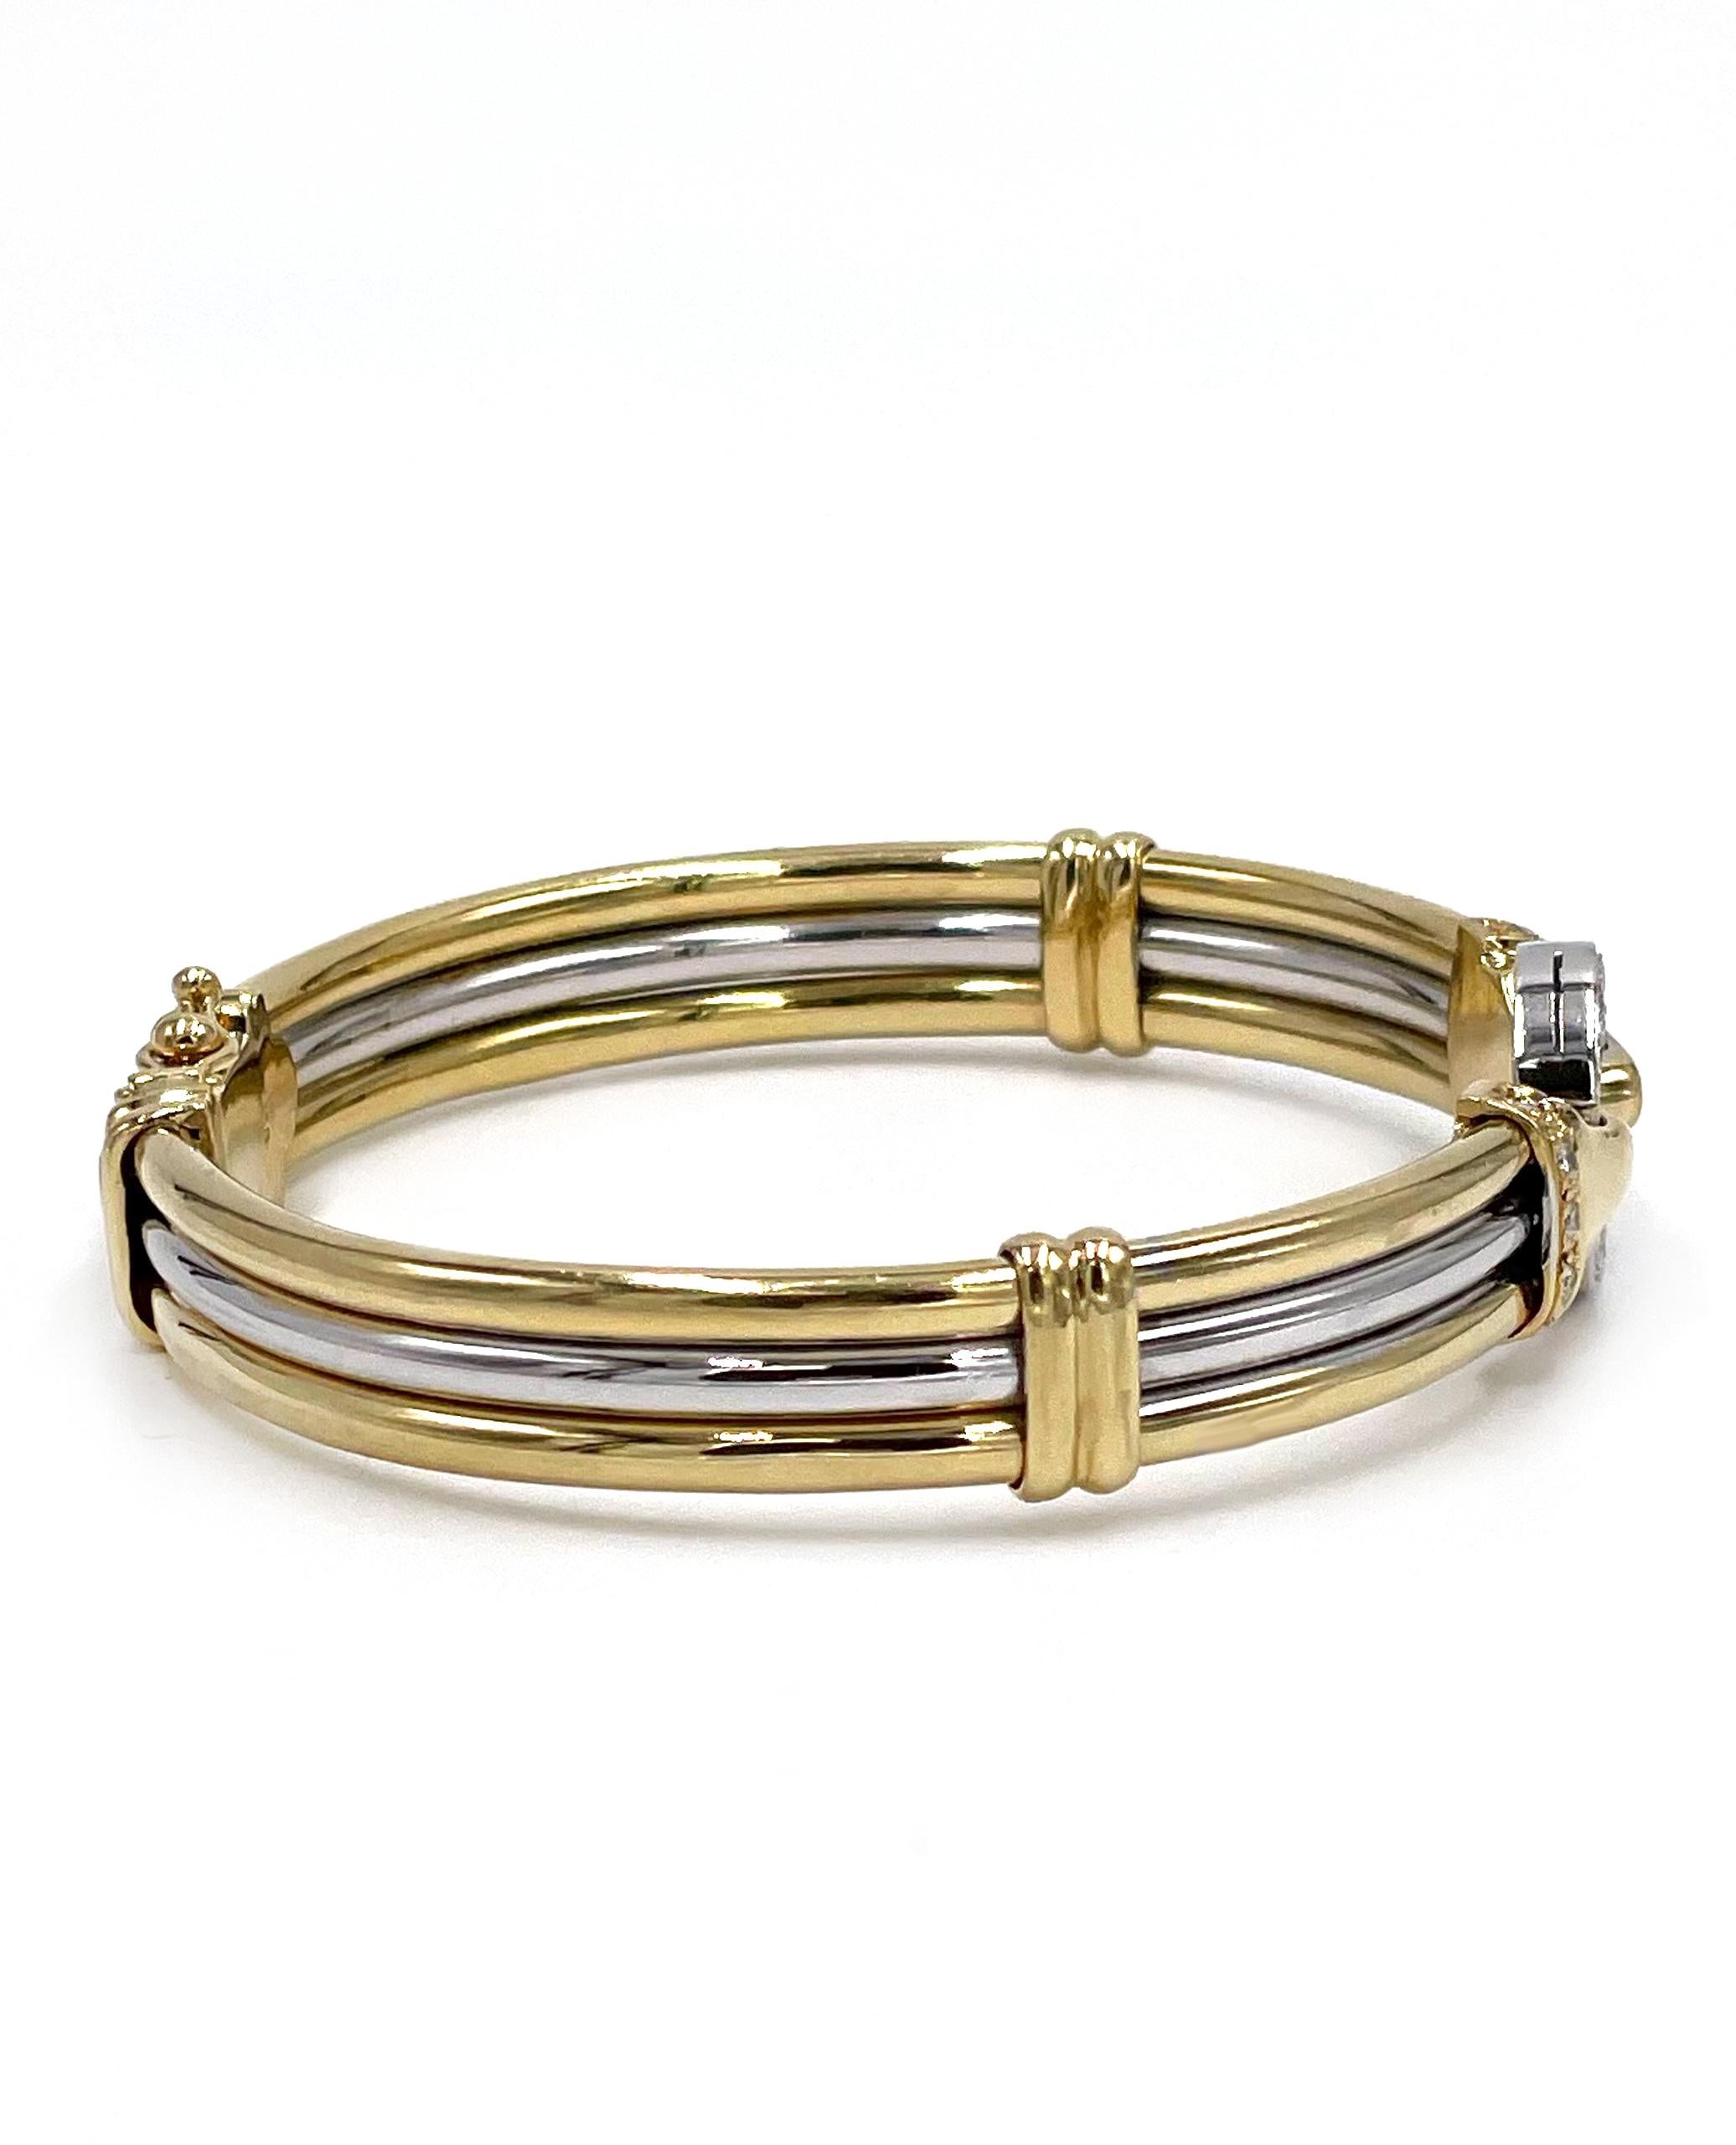 bracelet rigide en or jaune et blanc 18K, bicolore, avec diamants.  Le bracelet comporte un cercle rond garni de diamants ronds taille brillant sertis en pavé.  Le bracelet a un poids total de diamants de 0,40 carats. 

* Les diamants sont de